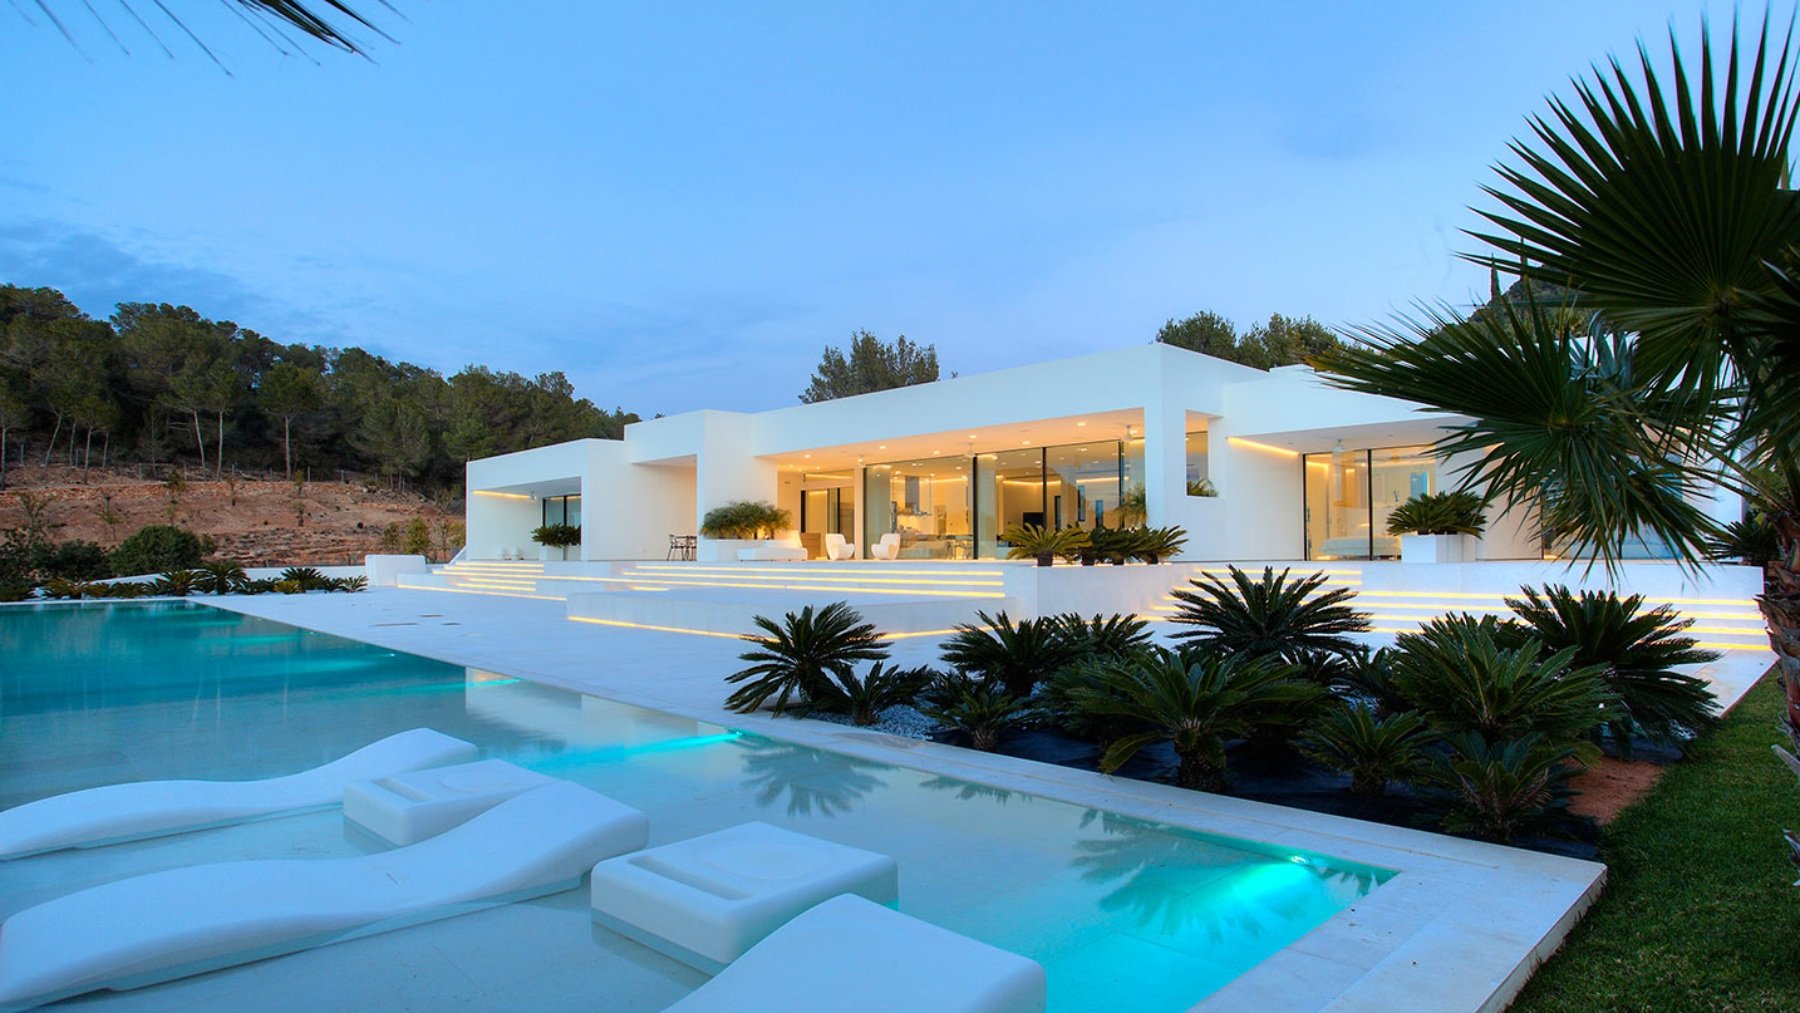 Espectacular mansión en Ibiza. (MG&AG)